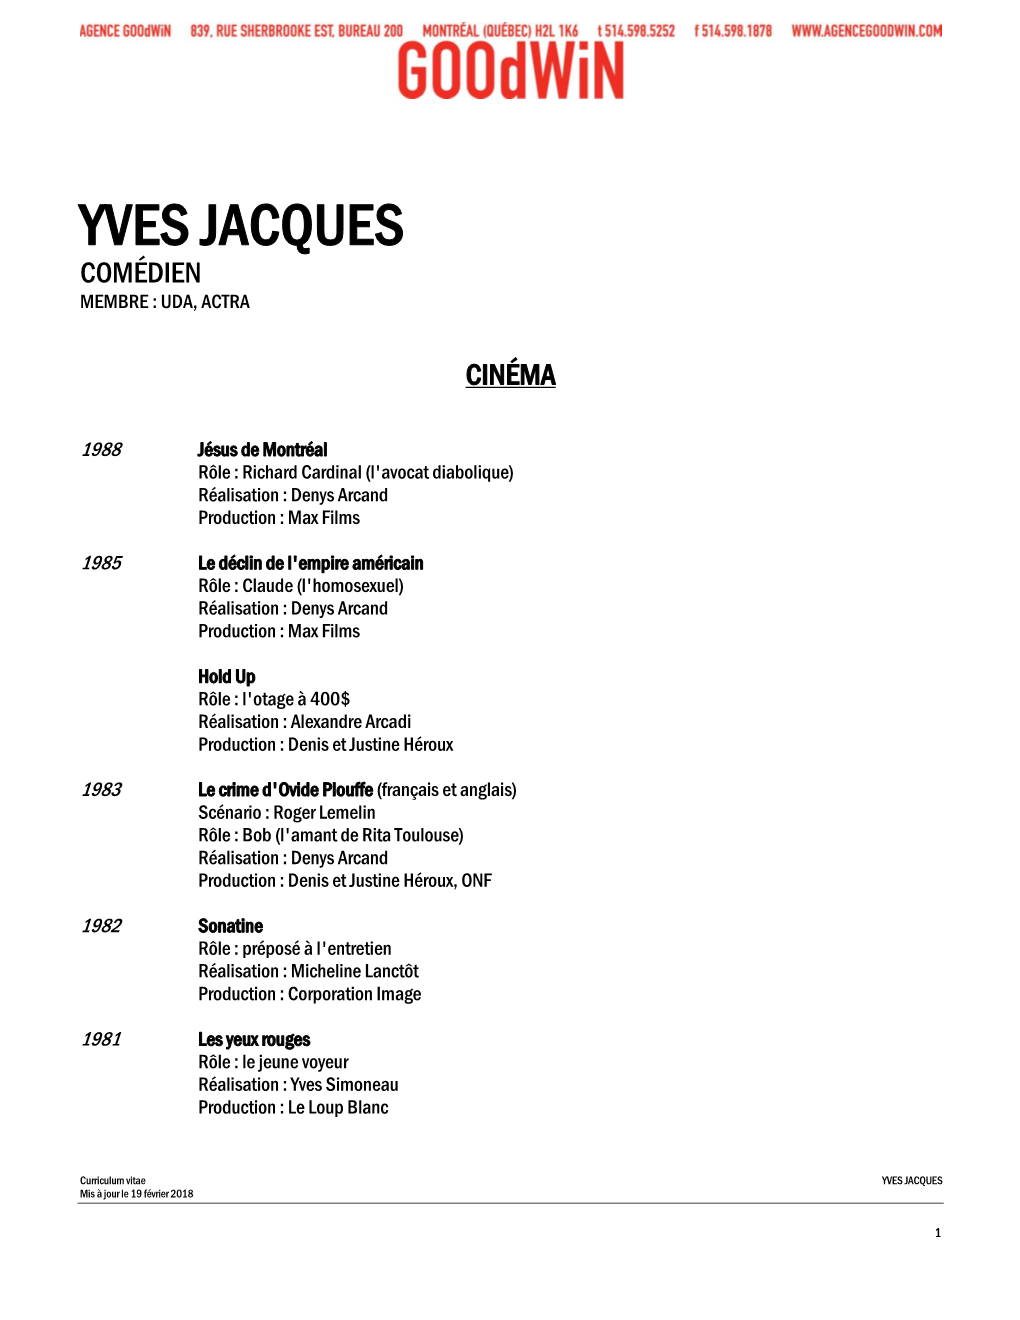 Yves Jacques Comédien Membre : Uda, Actra